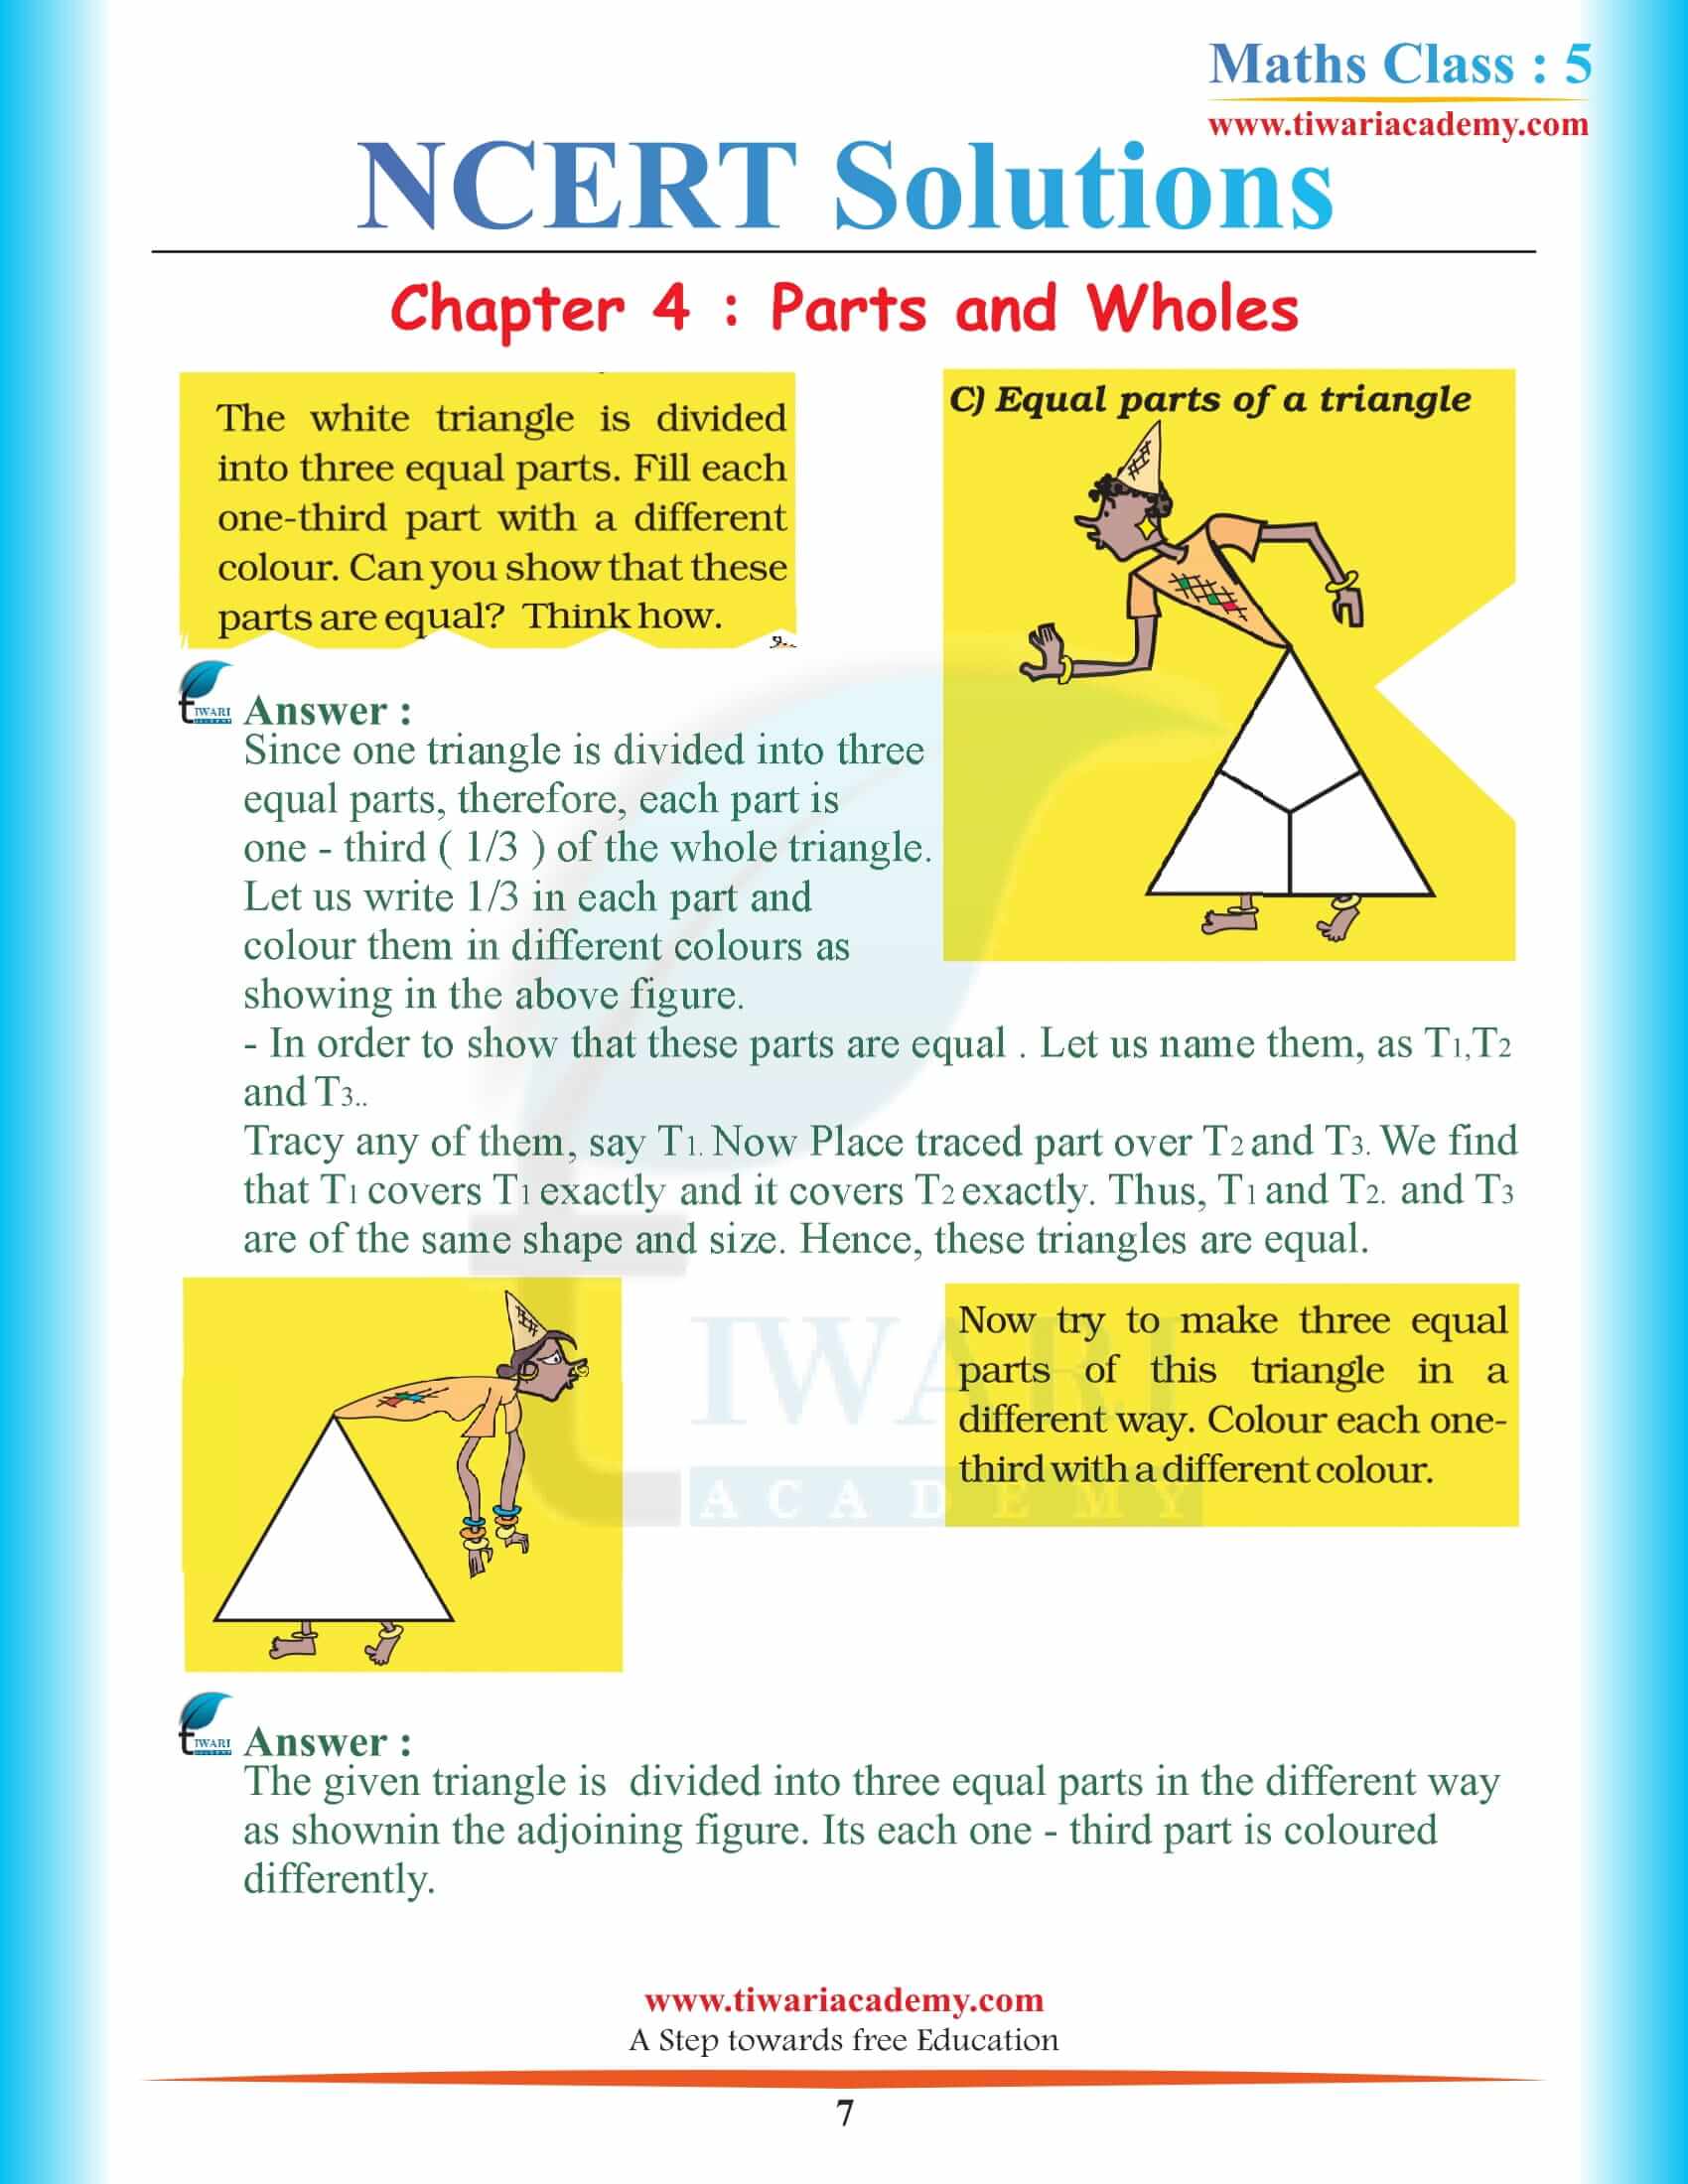 Class 5 Maths Chapter 4 Solutions